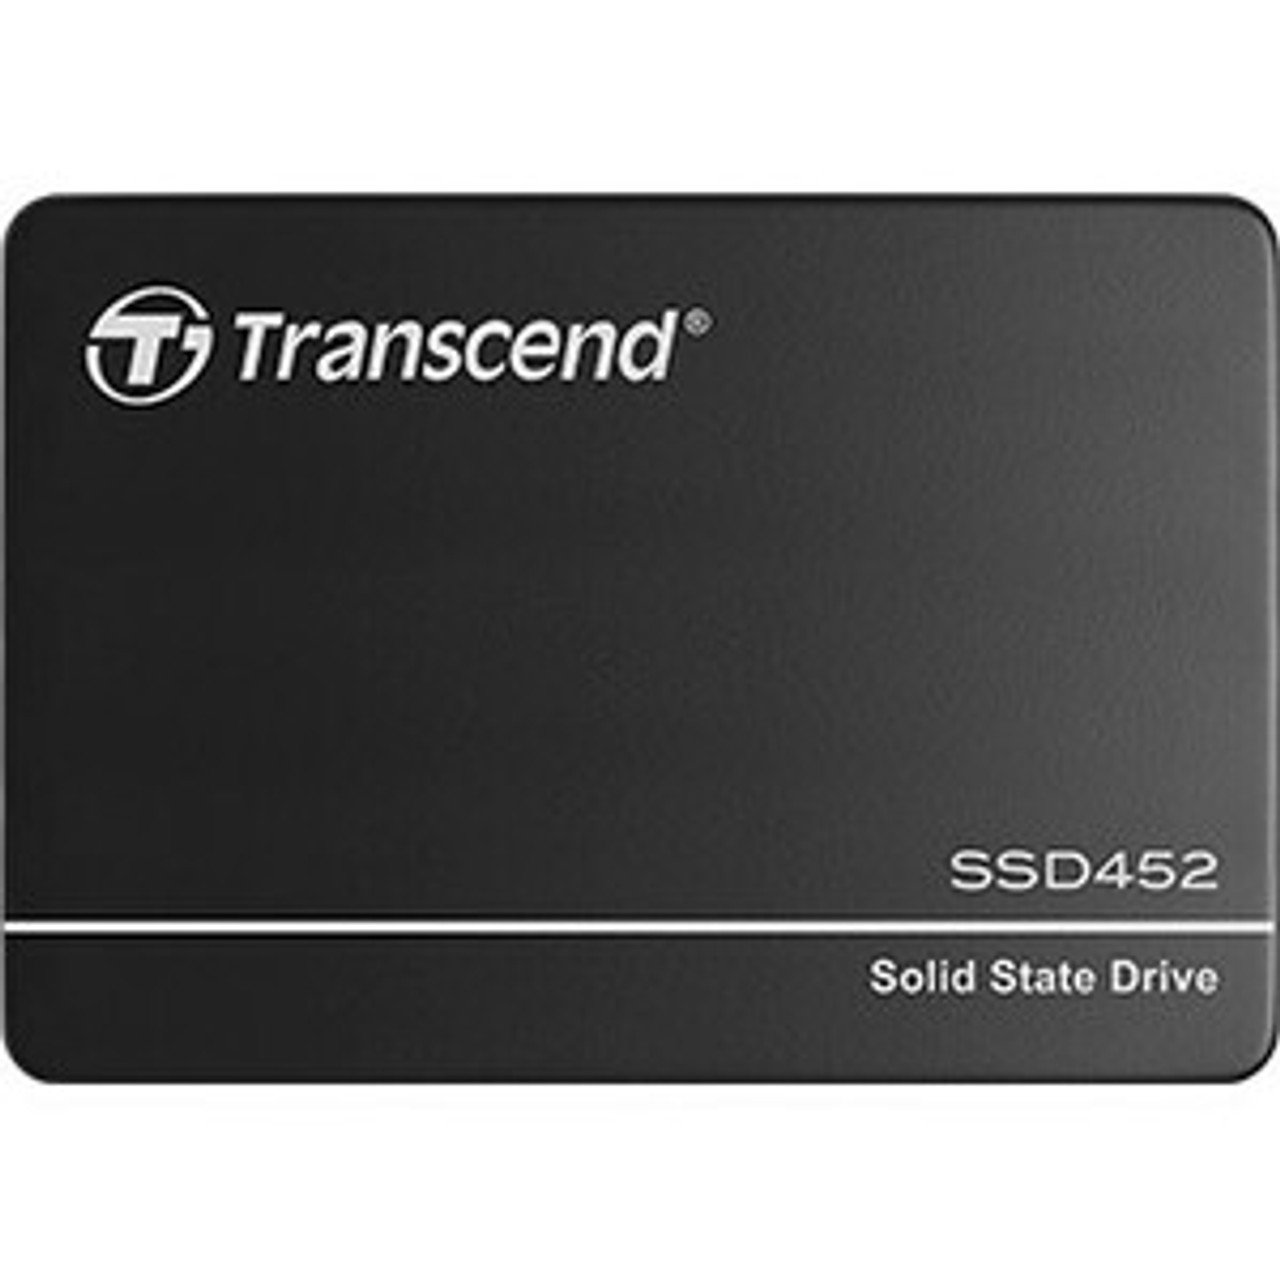 TS256GSSD452K Transcend SSD452K 256GB SATA 6Gbps 2.5-inch Internal Solid State Drive (SSD)